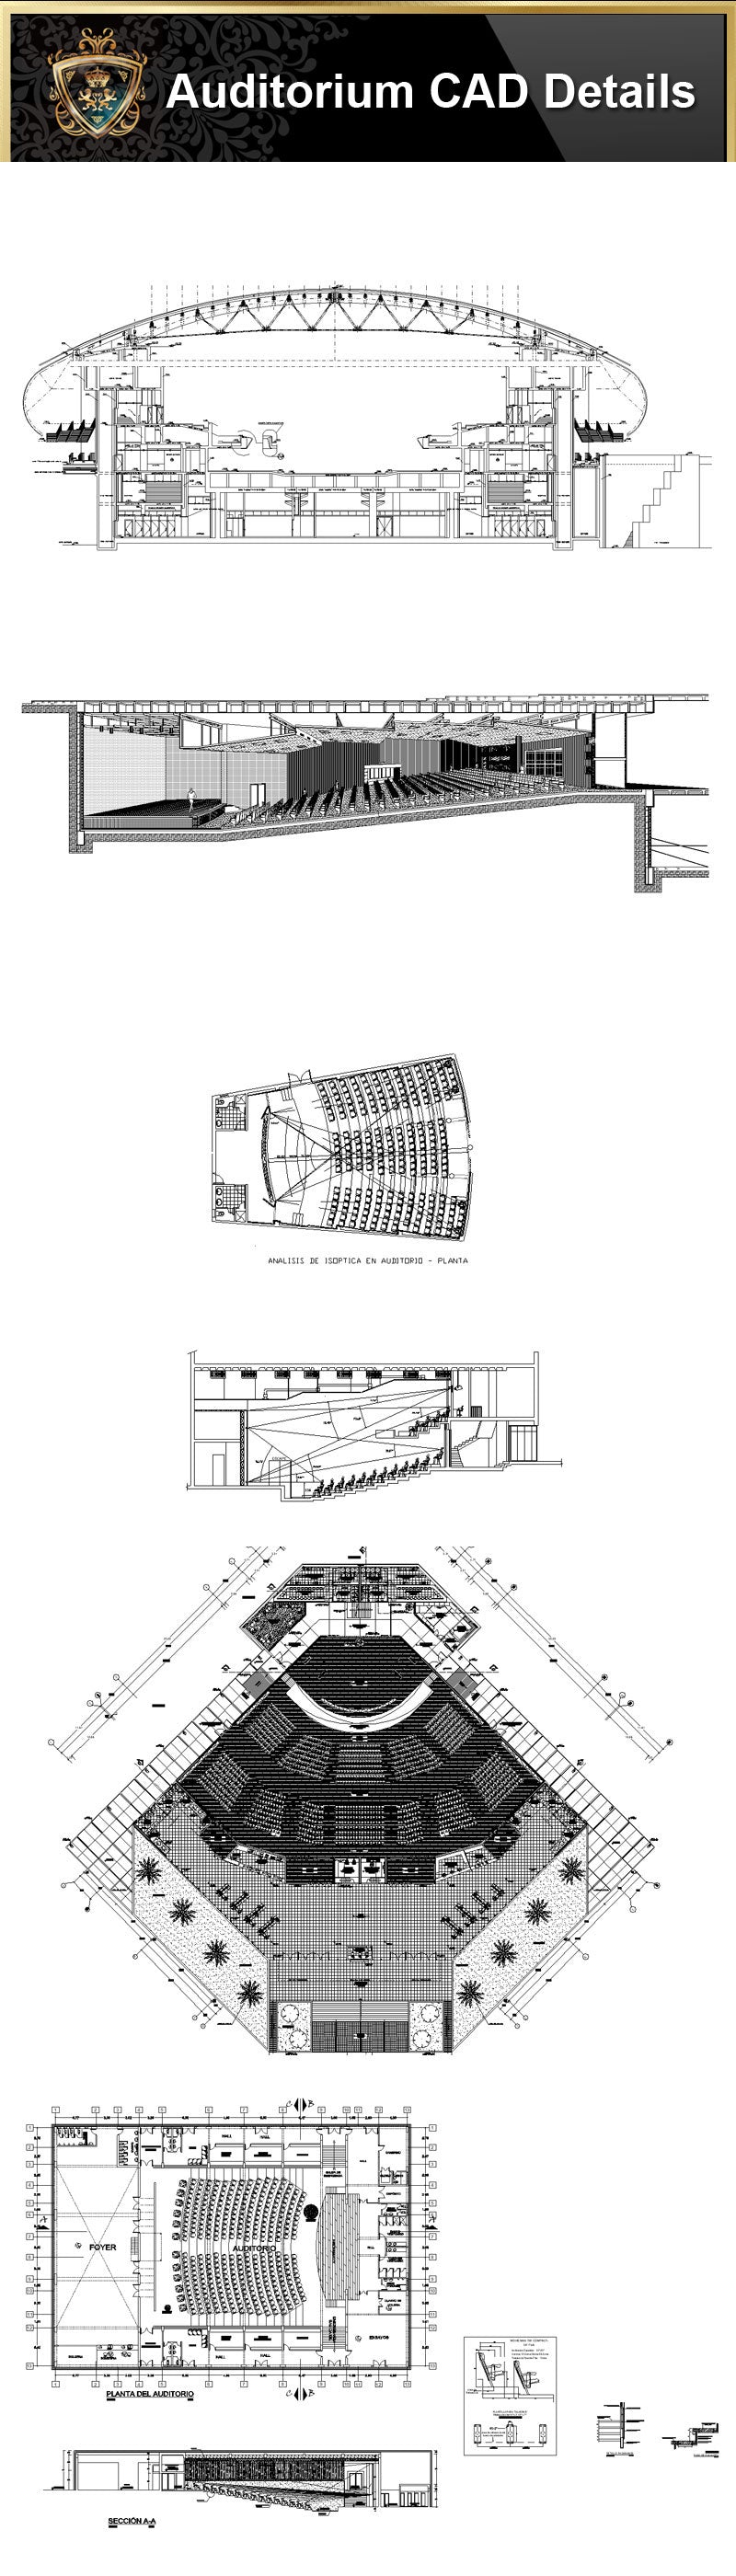 ★【Auditorium CAD Drawings Collection】@Auditorium Design,Autocad Blocks,AuditoriumDetails,Auditorium Section,Auditorium elevation design drawings